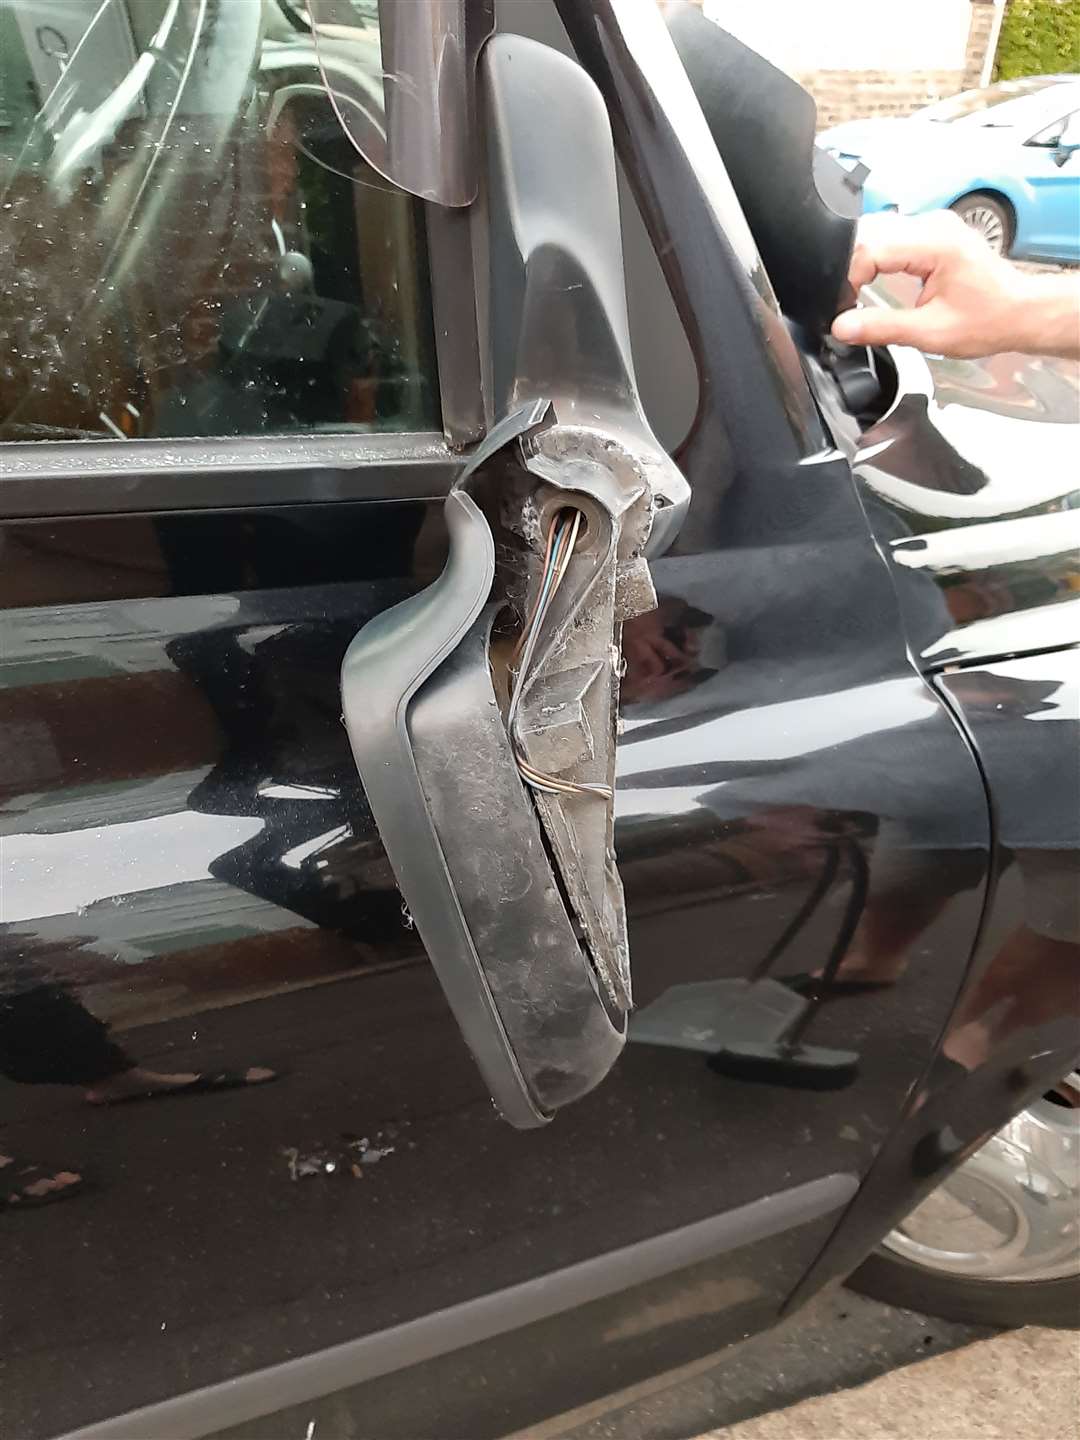 Mr Hoskins' damaged car mirror. Picture: Angela Hoskins